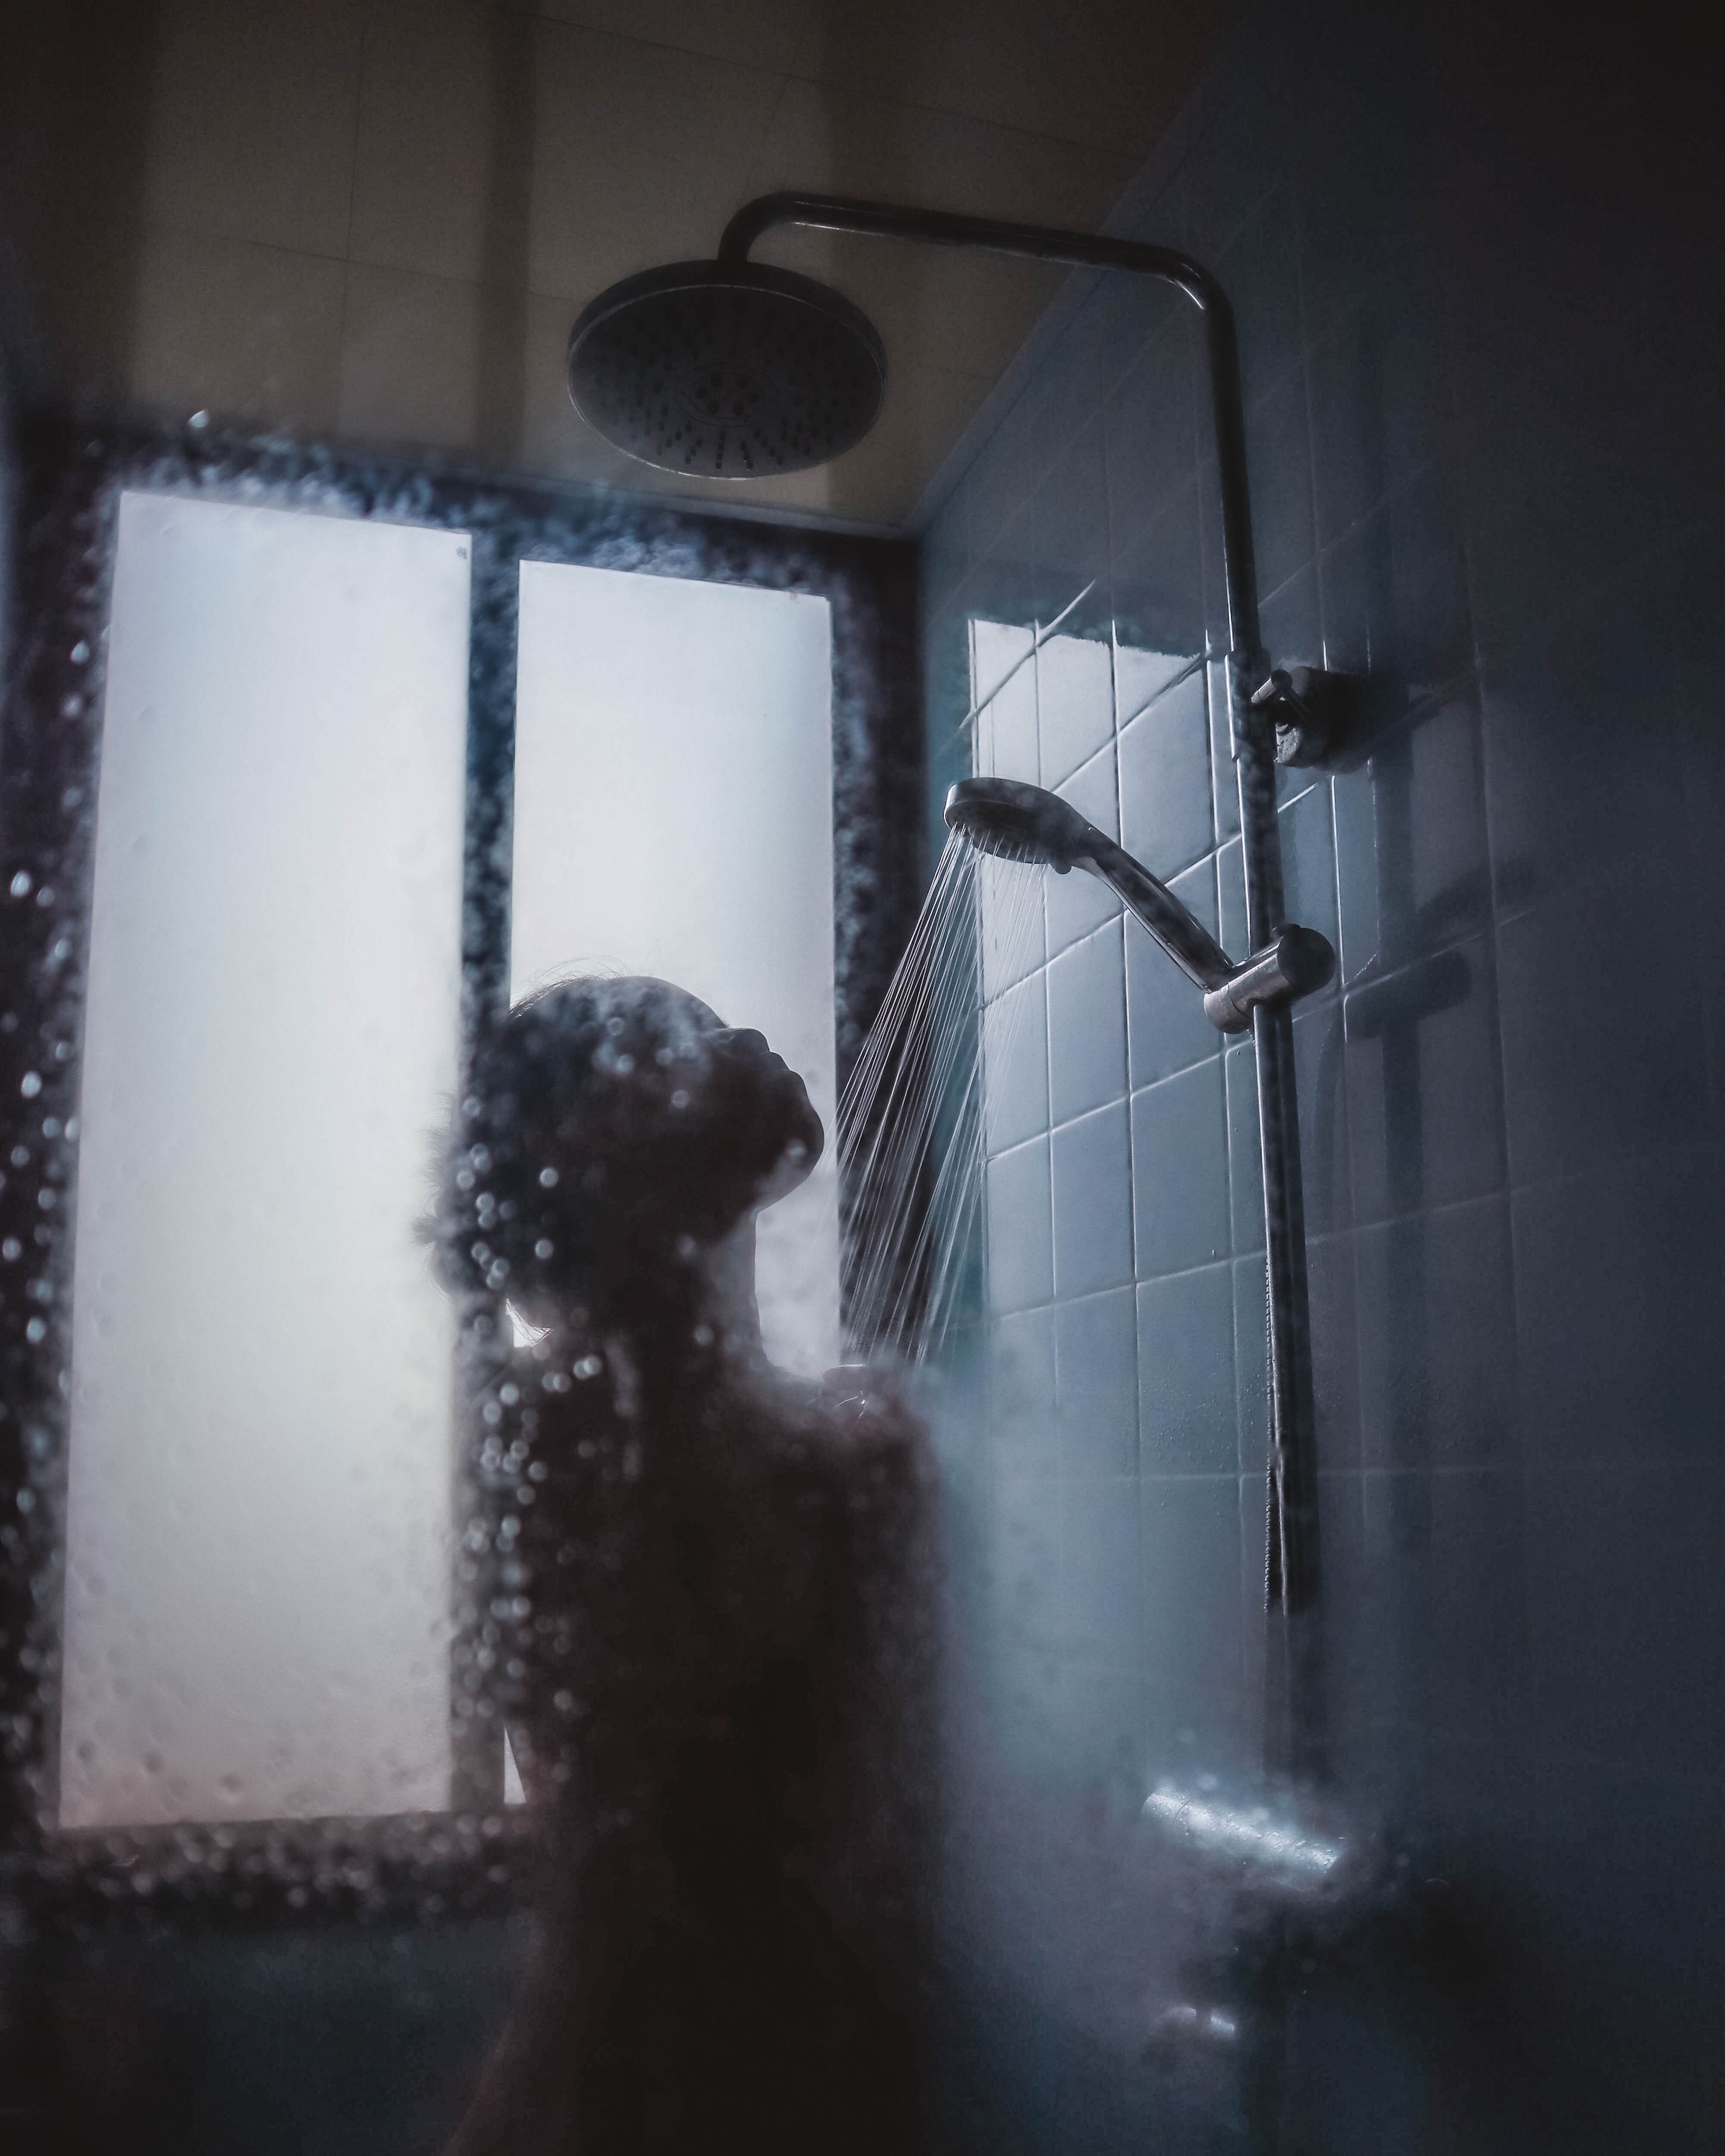 Personne sous la douche | Source : Unsplash